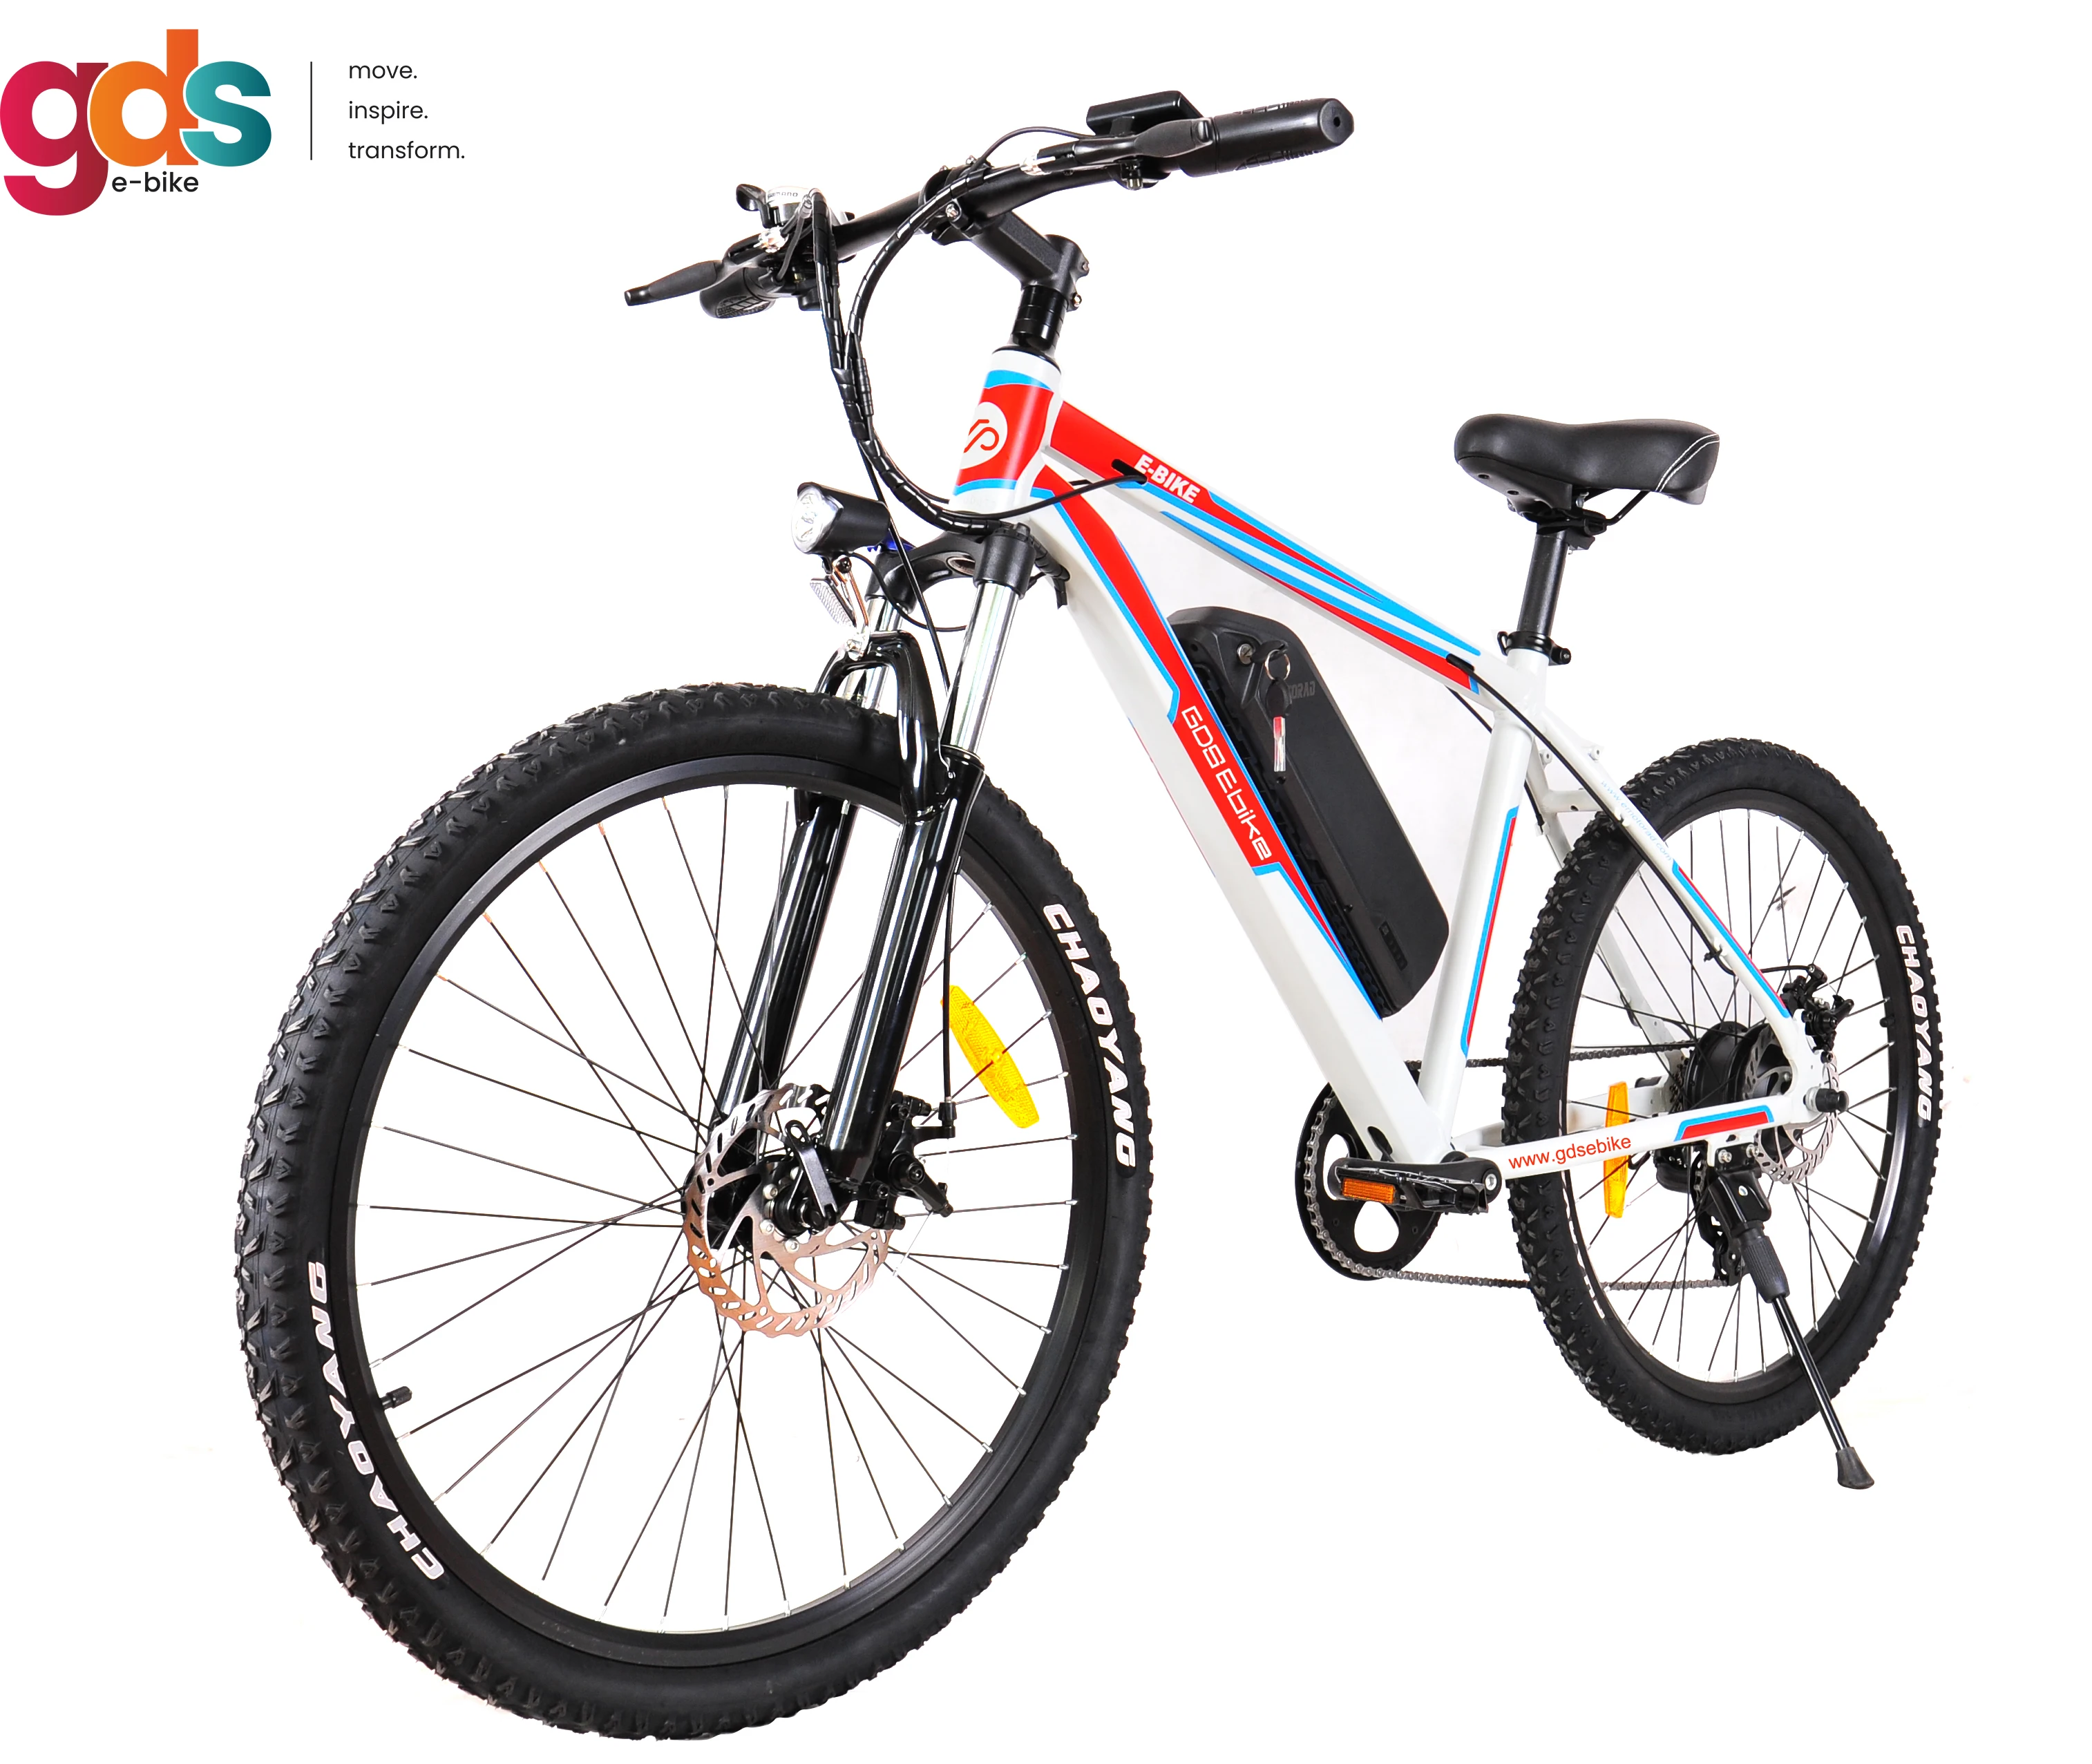 

RTS GDS EBIKE M006 road bike electric bike 36V 250W sport bicicleta electrica e-bike e mtb electric bicycle mountain bike